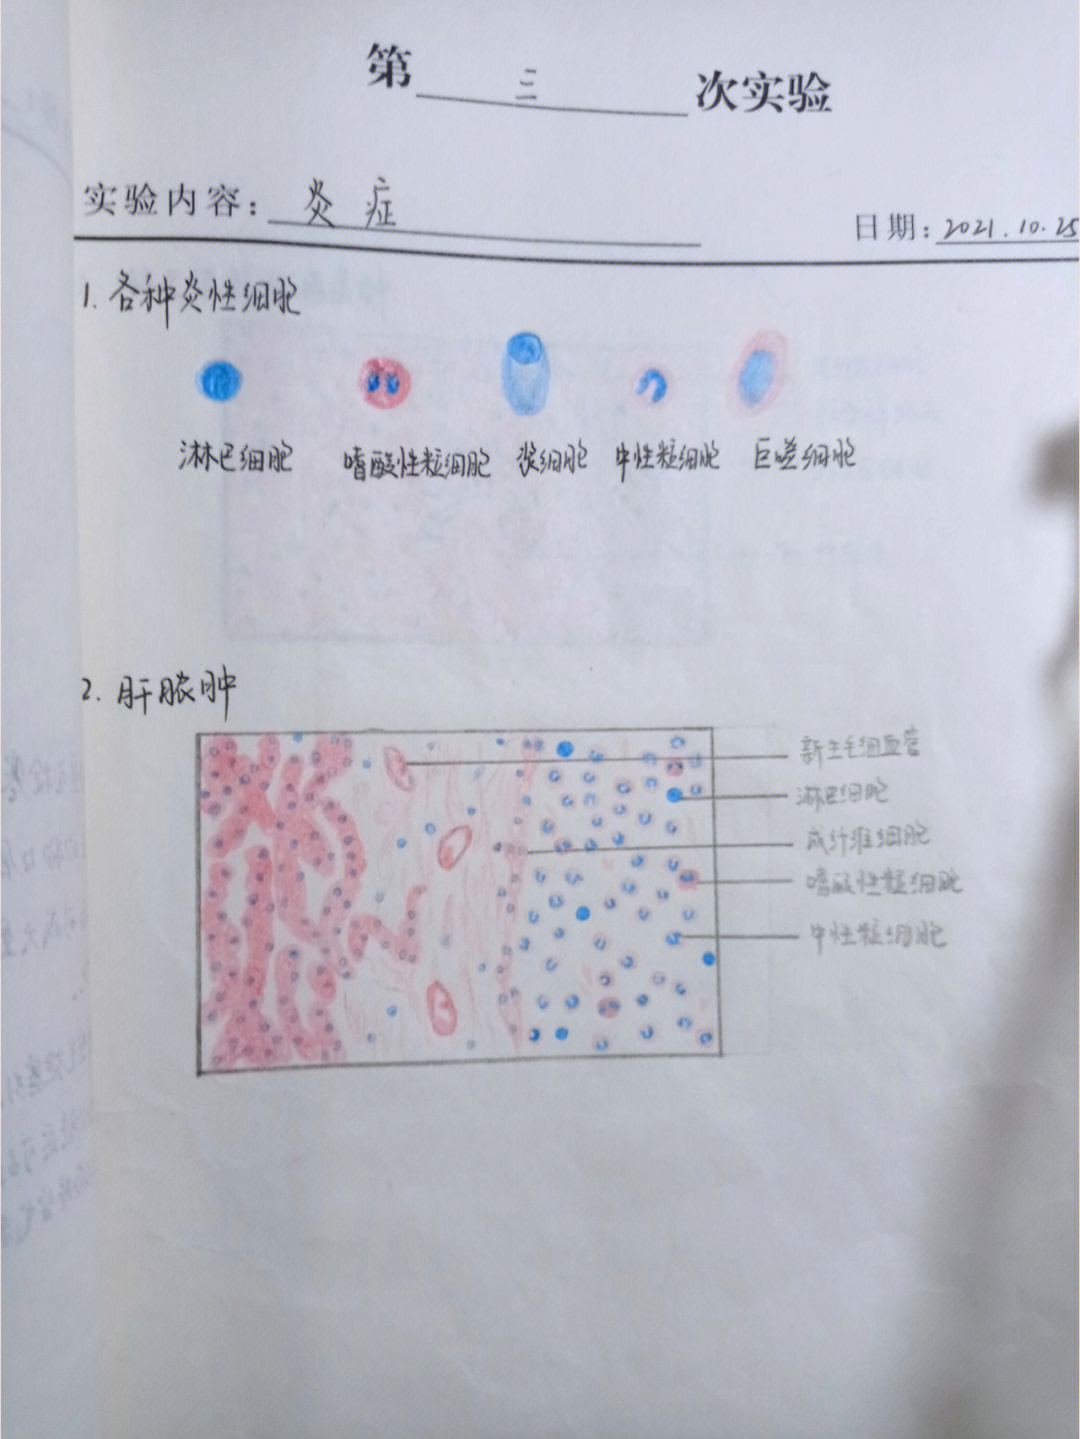 肝脓肿红蓝铅笔绘图图片